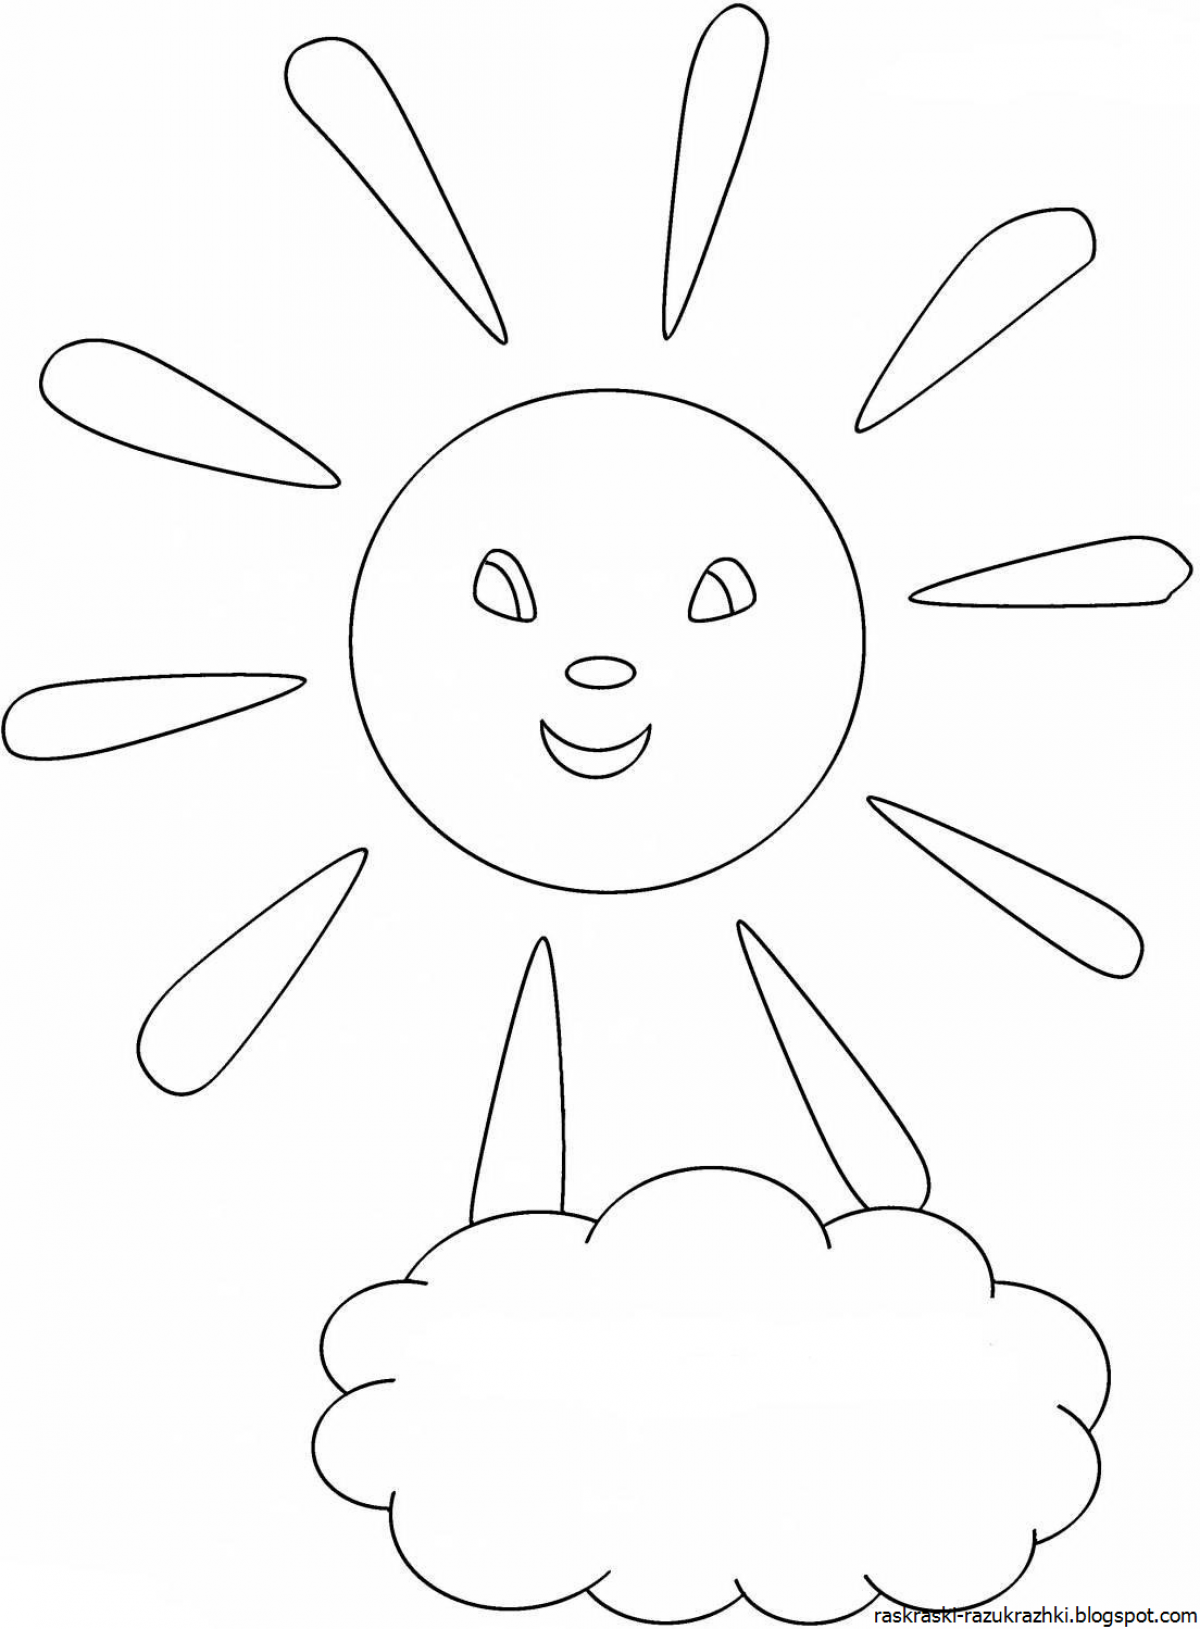 Раскраска солнышко для детей 2-3 лет